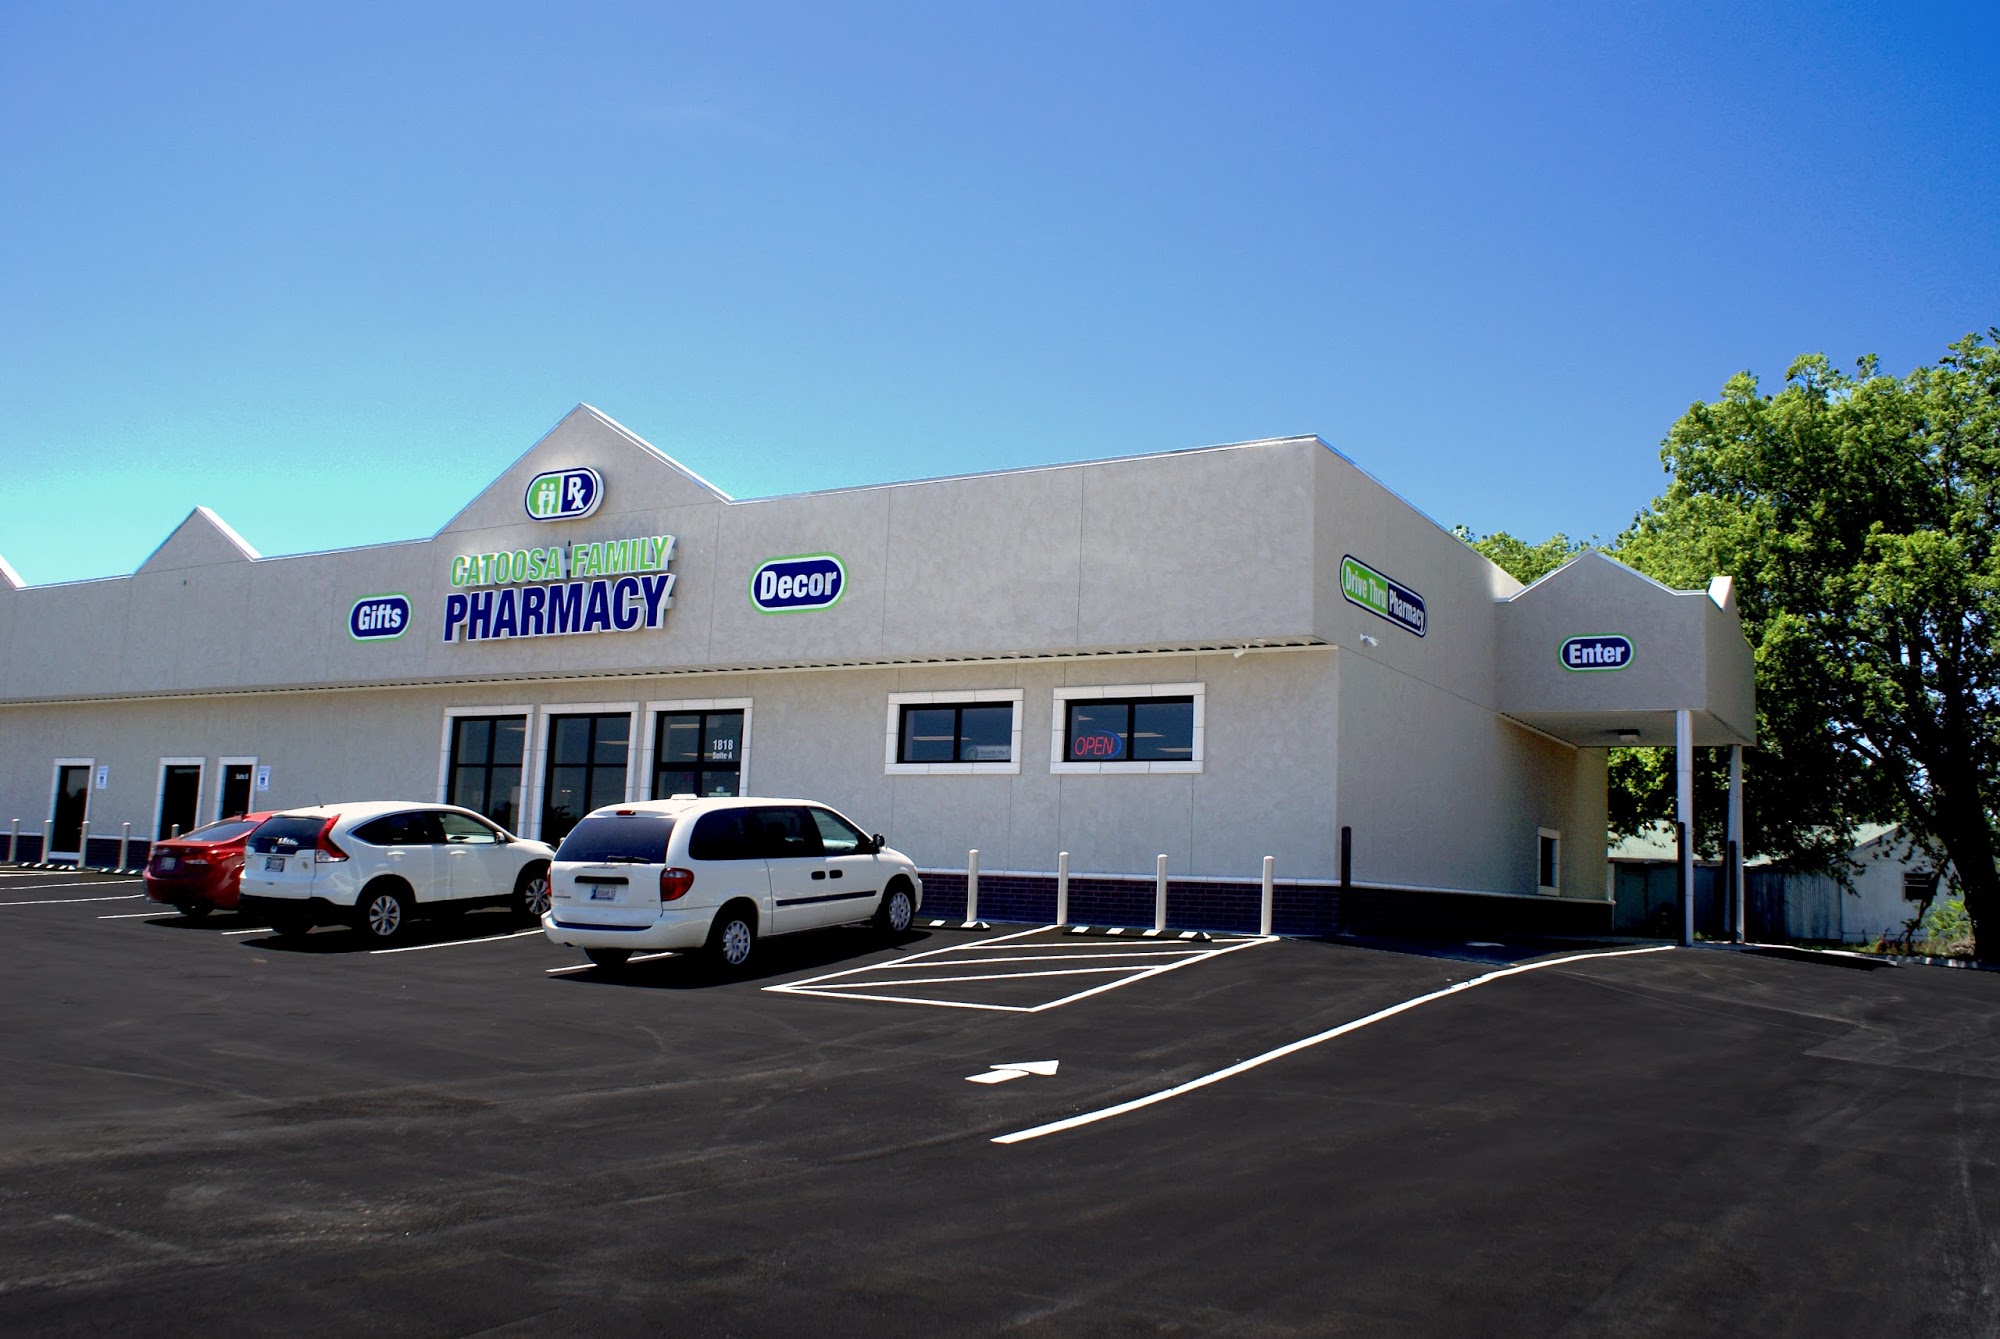 Catoosa Family Pharmacy